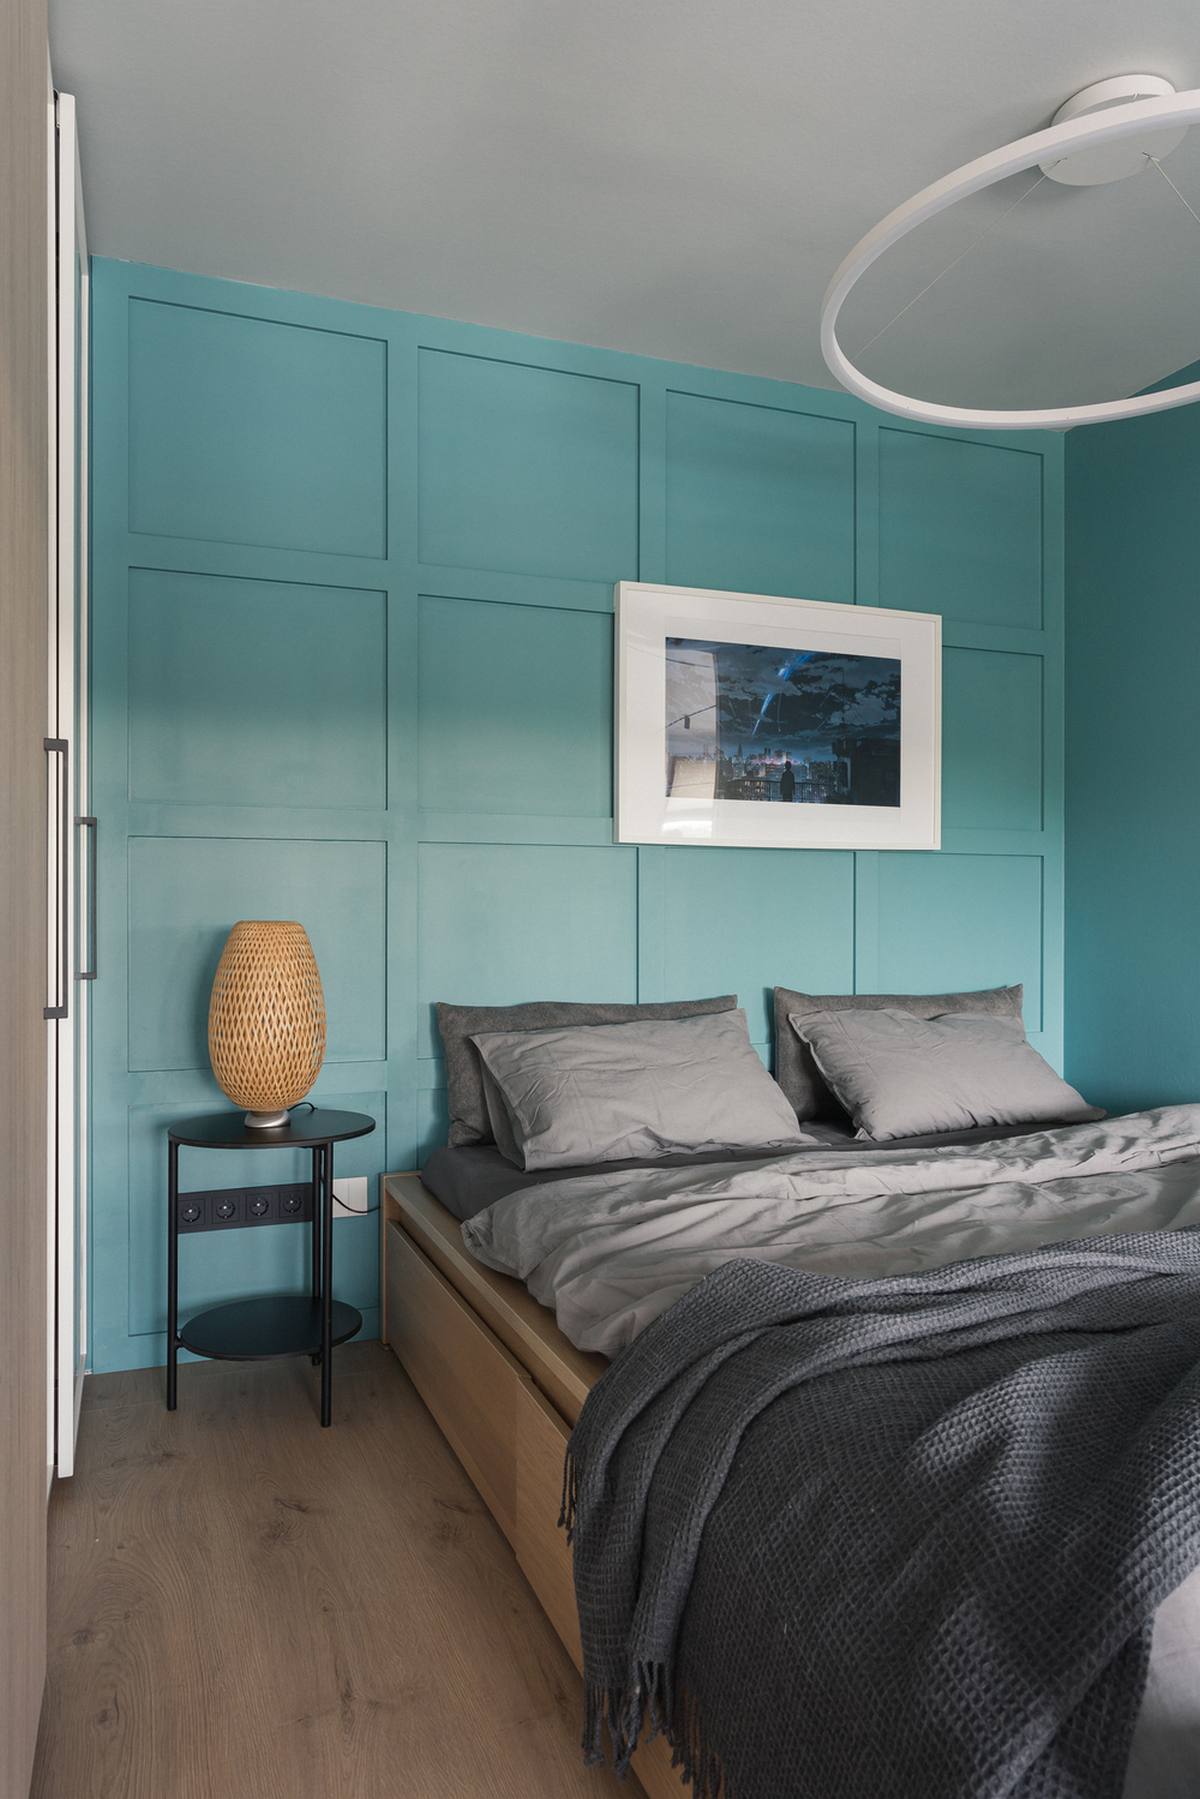 Để tạo sự khác biệt với tổng thể căn hộ sử dụng gam màu trung tính là be và xám thì một phần bức tường phòng ngủ được sơn màu xanh ngọc lam, sắc màu cực kỳ phù hợp cho không gian thư giãn, tạo cảm giác êm dịu.